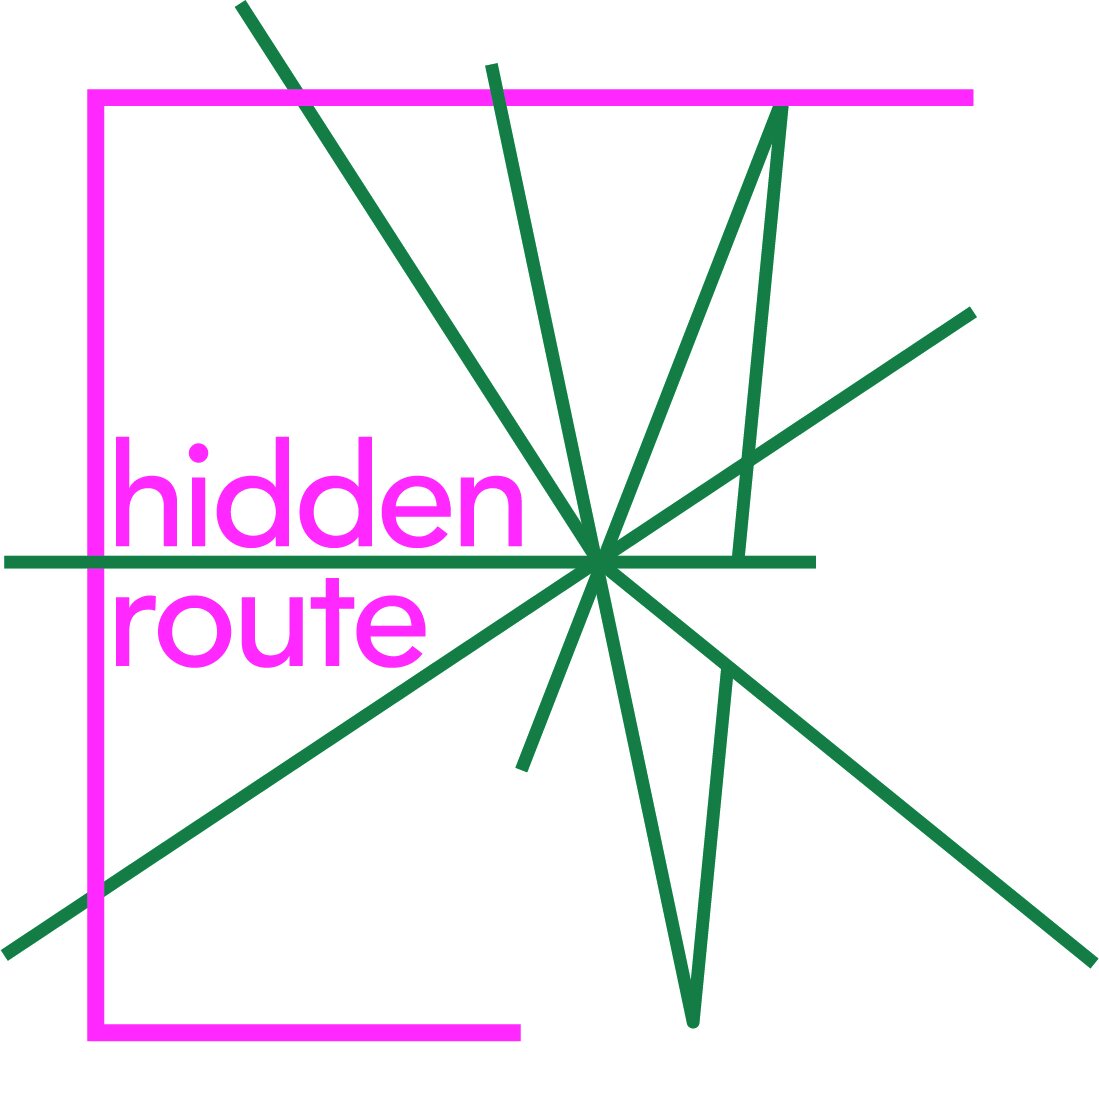 hiddenroute Logo.jpg